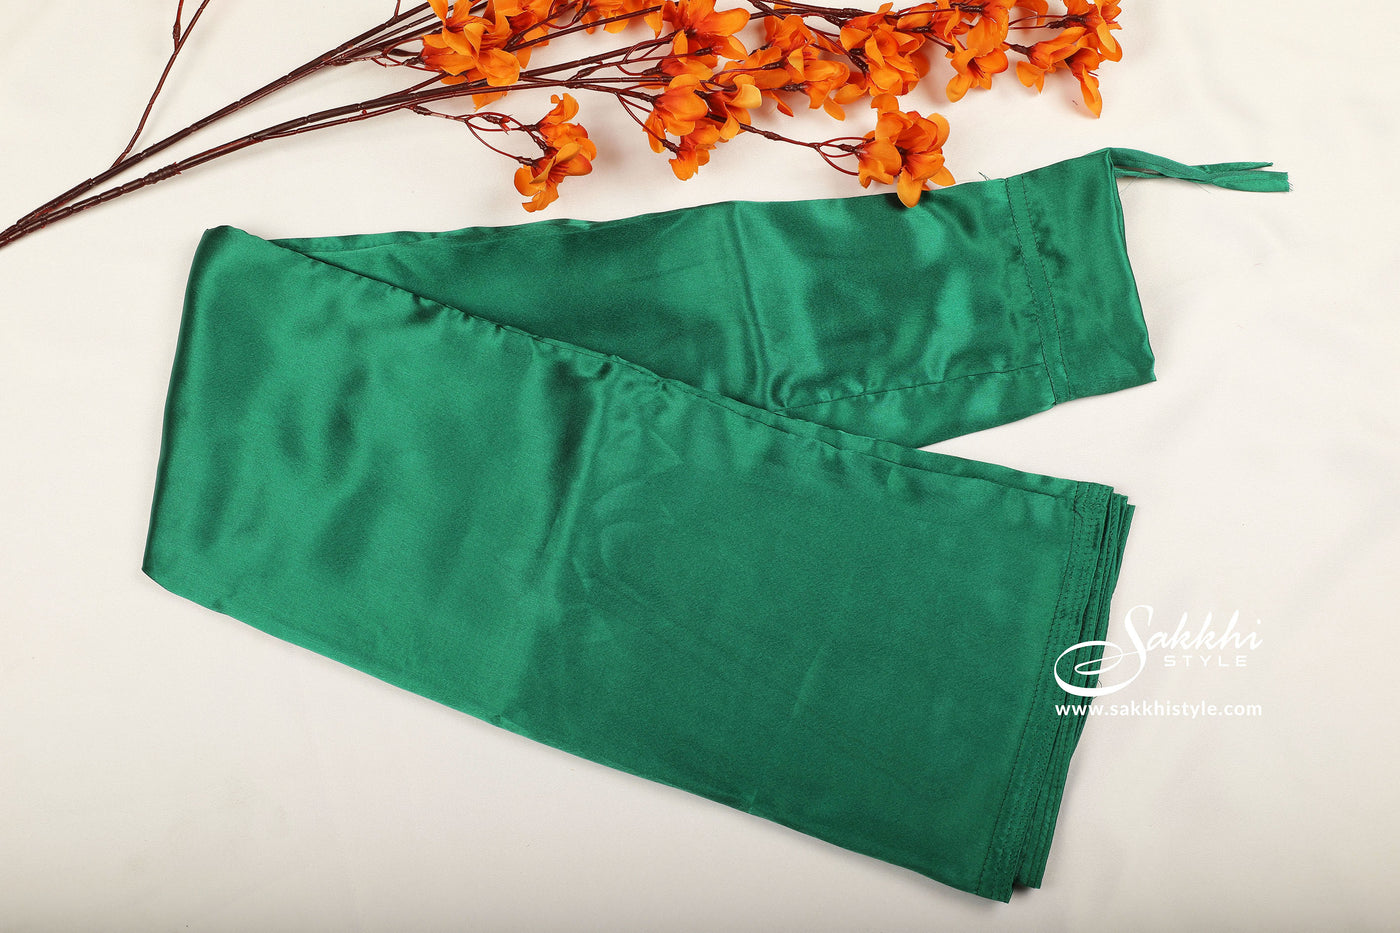 Green Women's Satin inskirt saree petticoat